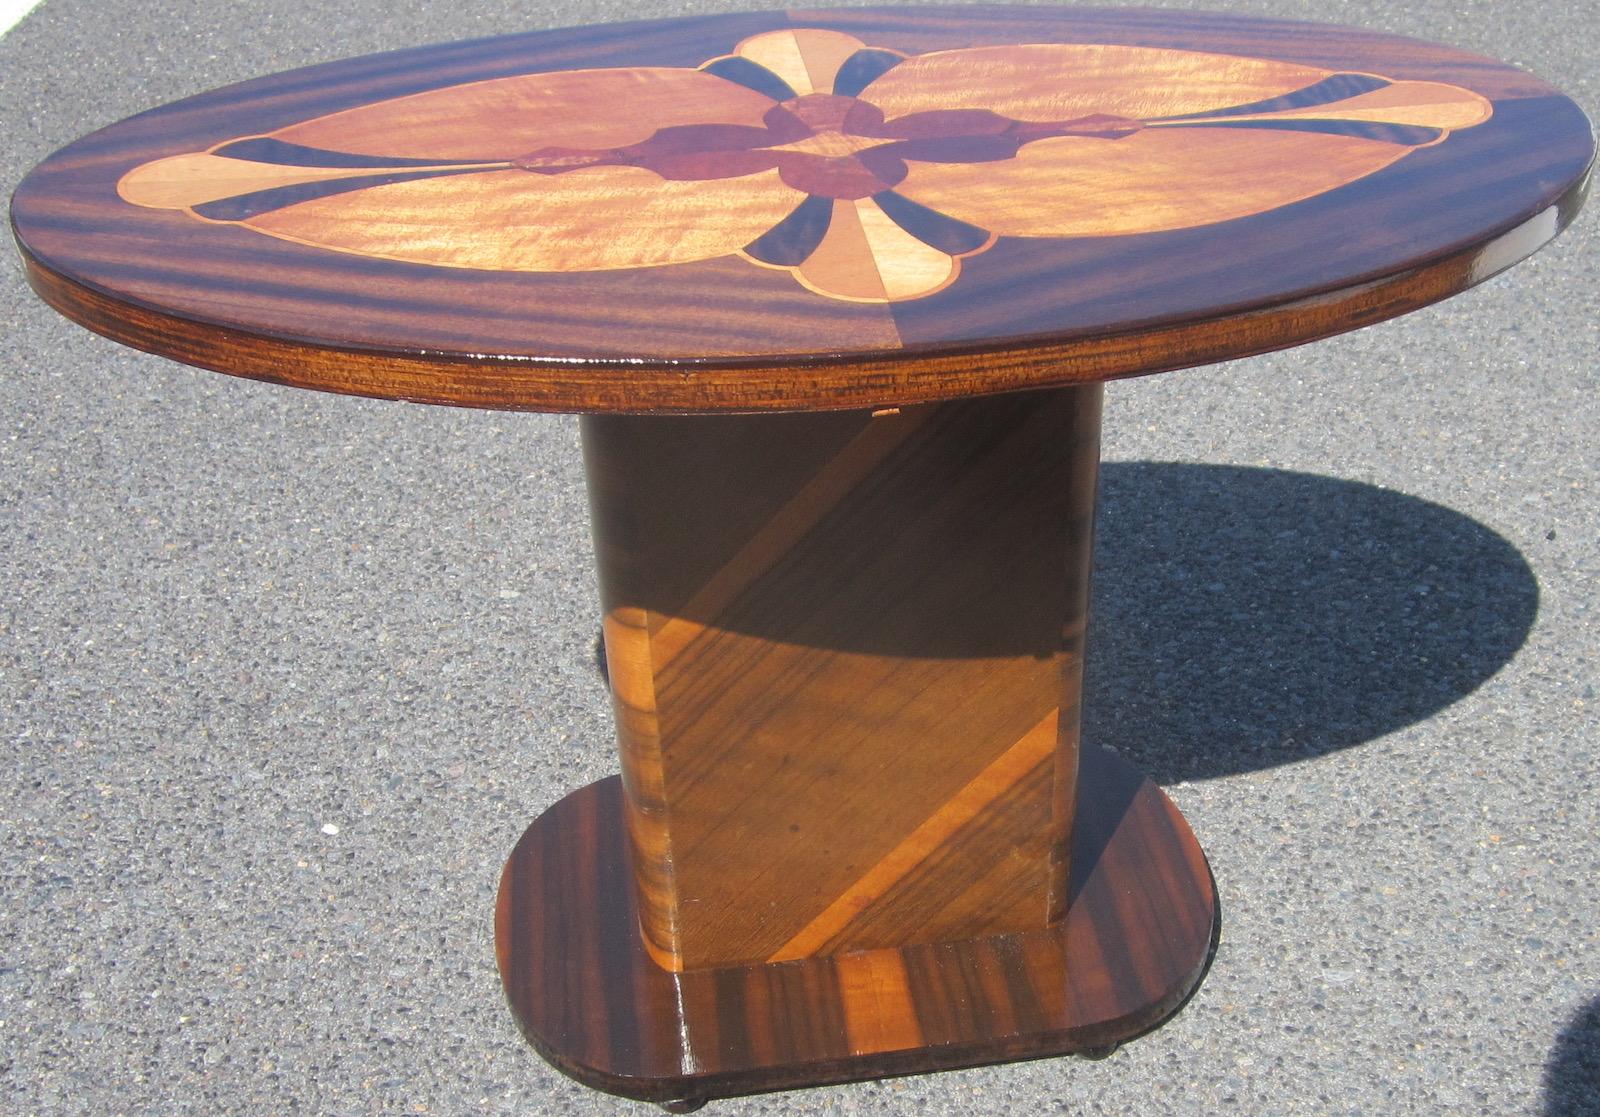 Art Deco Period Occasional Table (Handgefertigt)